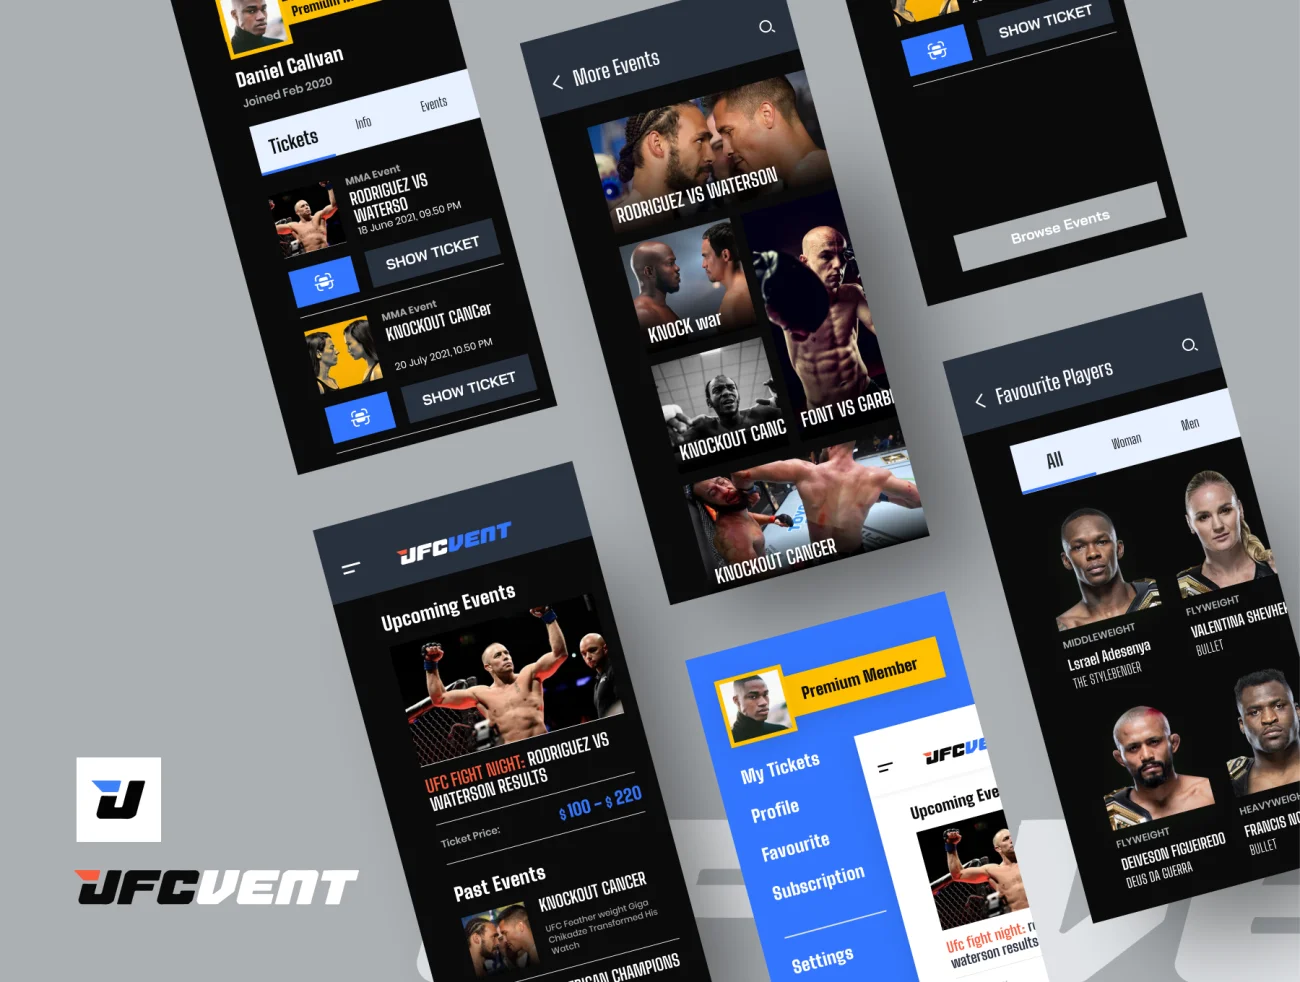 20屏完整版UFC MMA拳击摔跤综合格斗赛事比赛应用 UFC VENT – MMA Event Booking app插图9